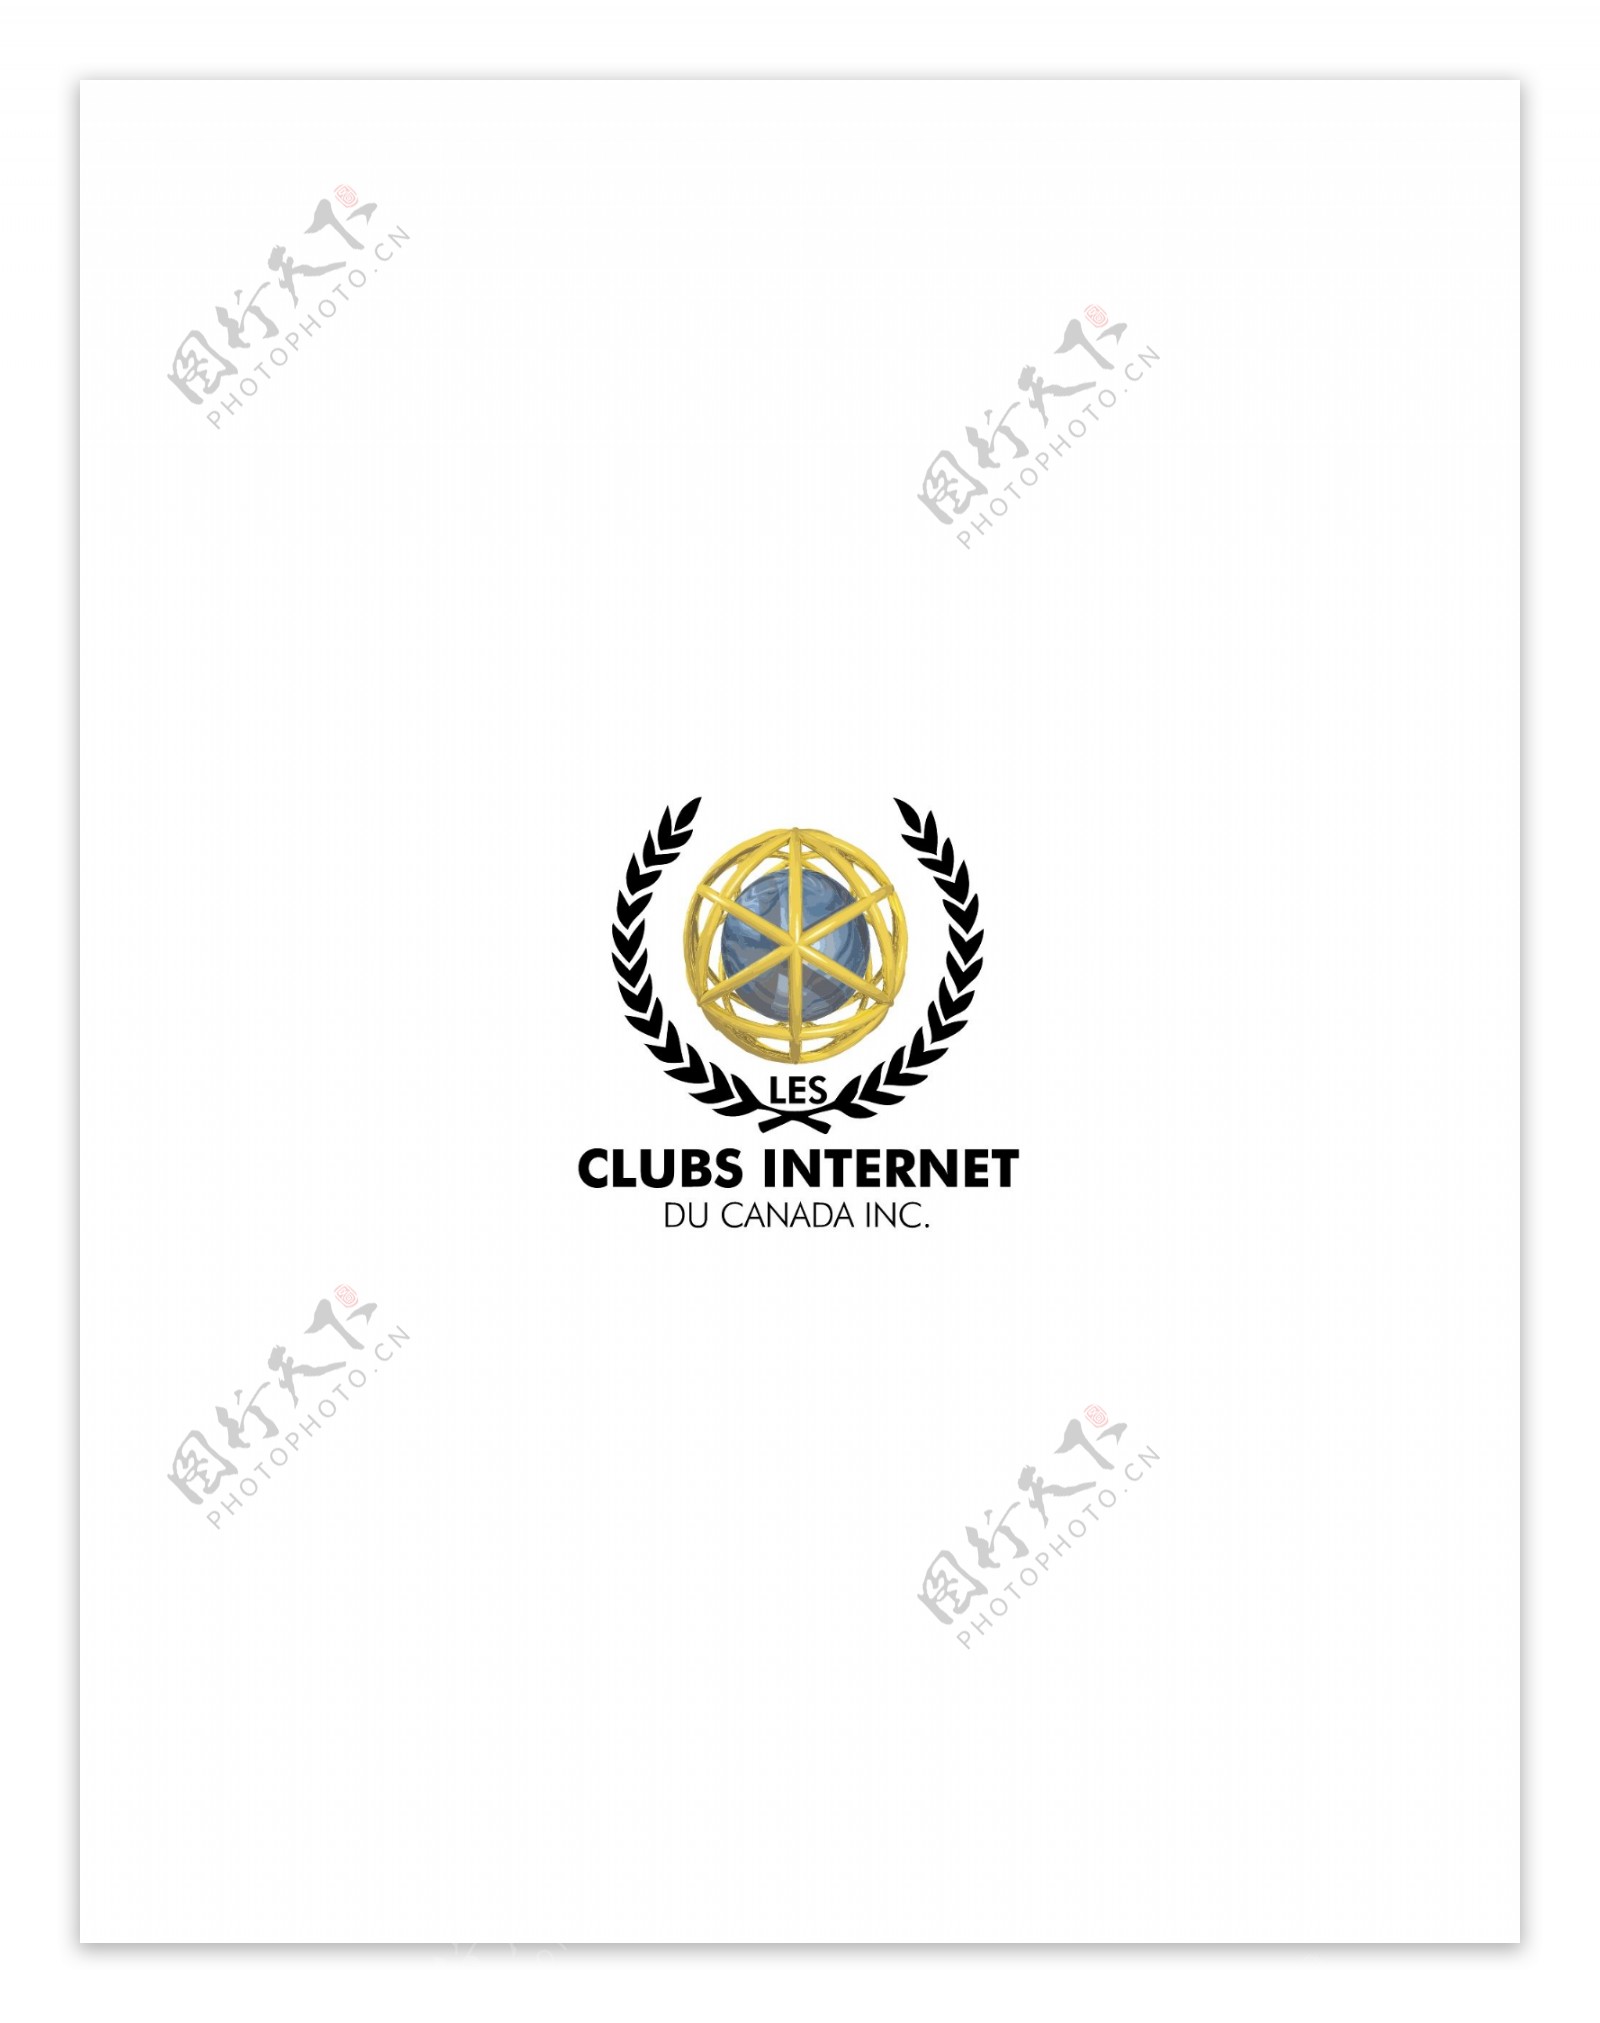 ClubsInternetDuCanadalogo设计欣赏ClubsInternetDuCanada下载标志设计欣赏